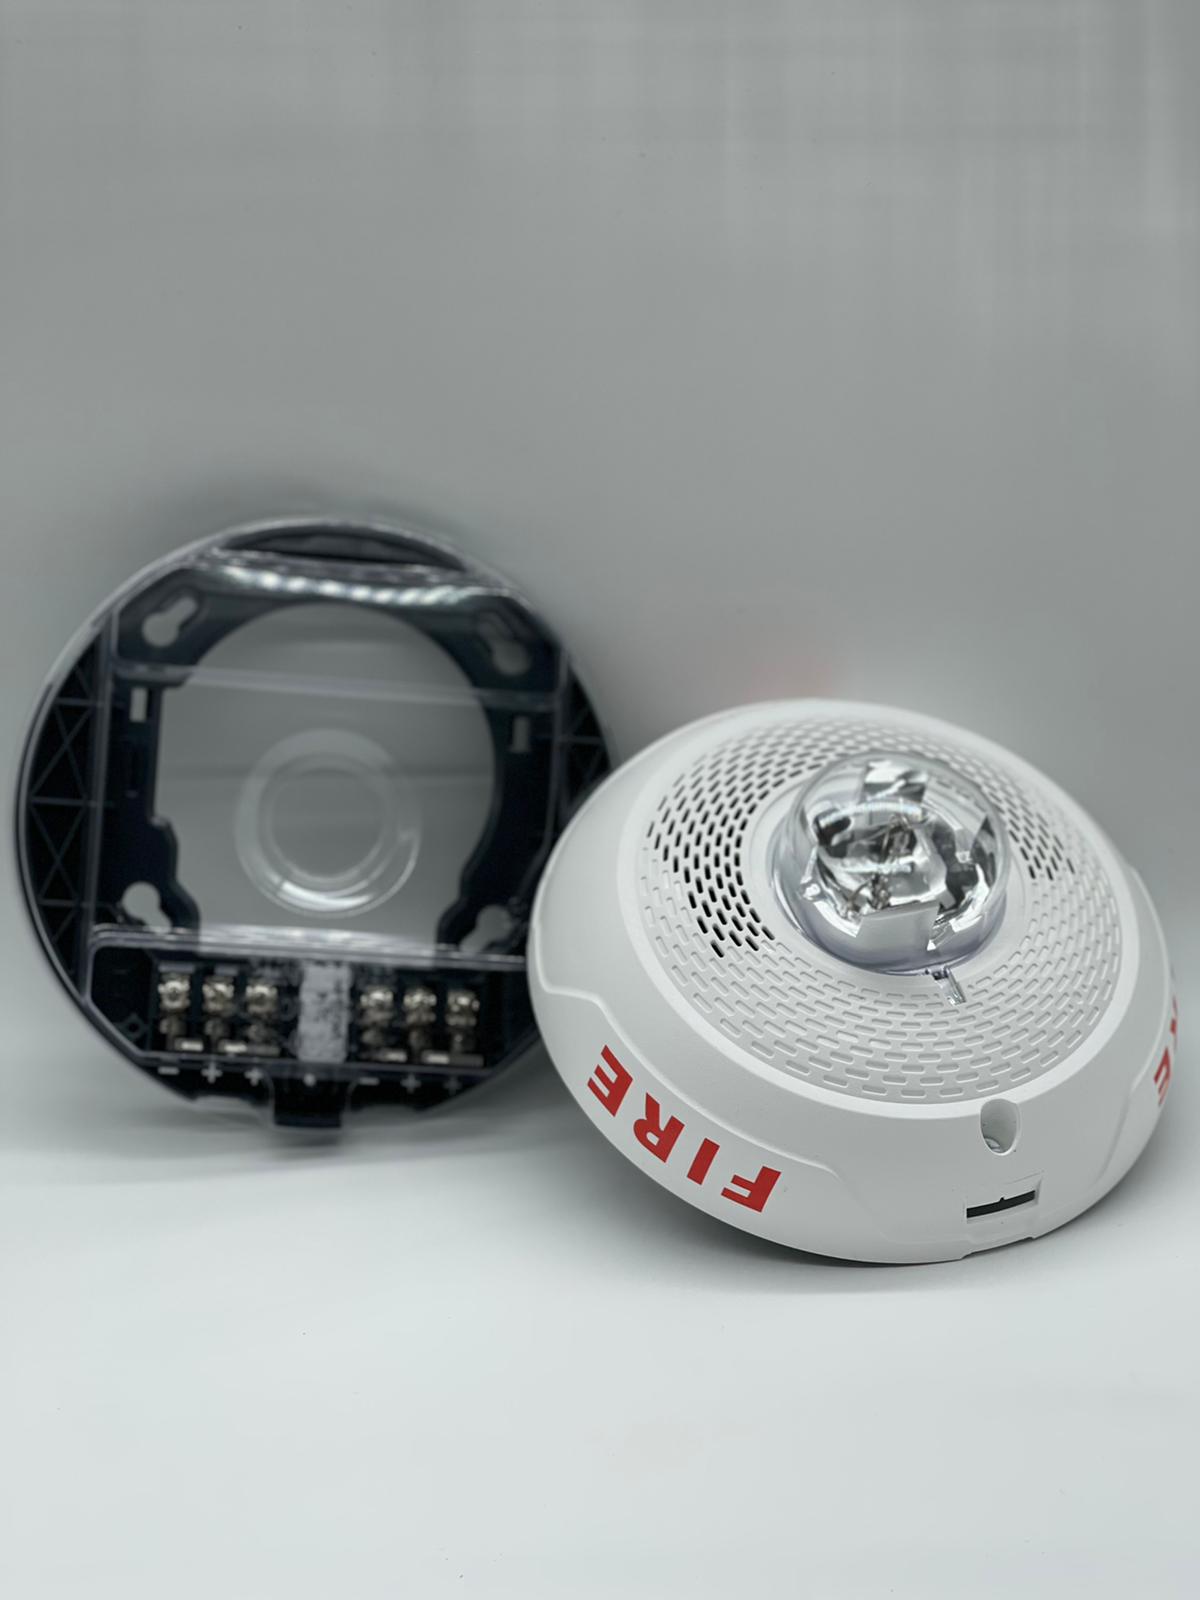 System Sensor SPSCWL - The Fire Alarm Supplier